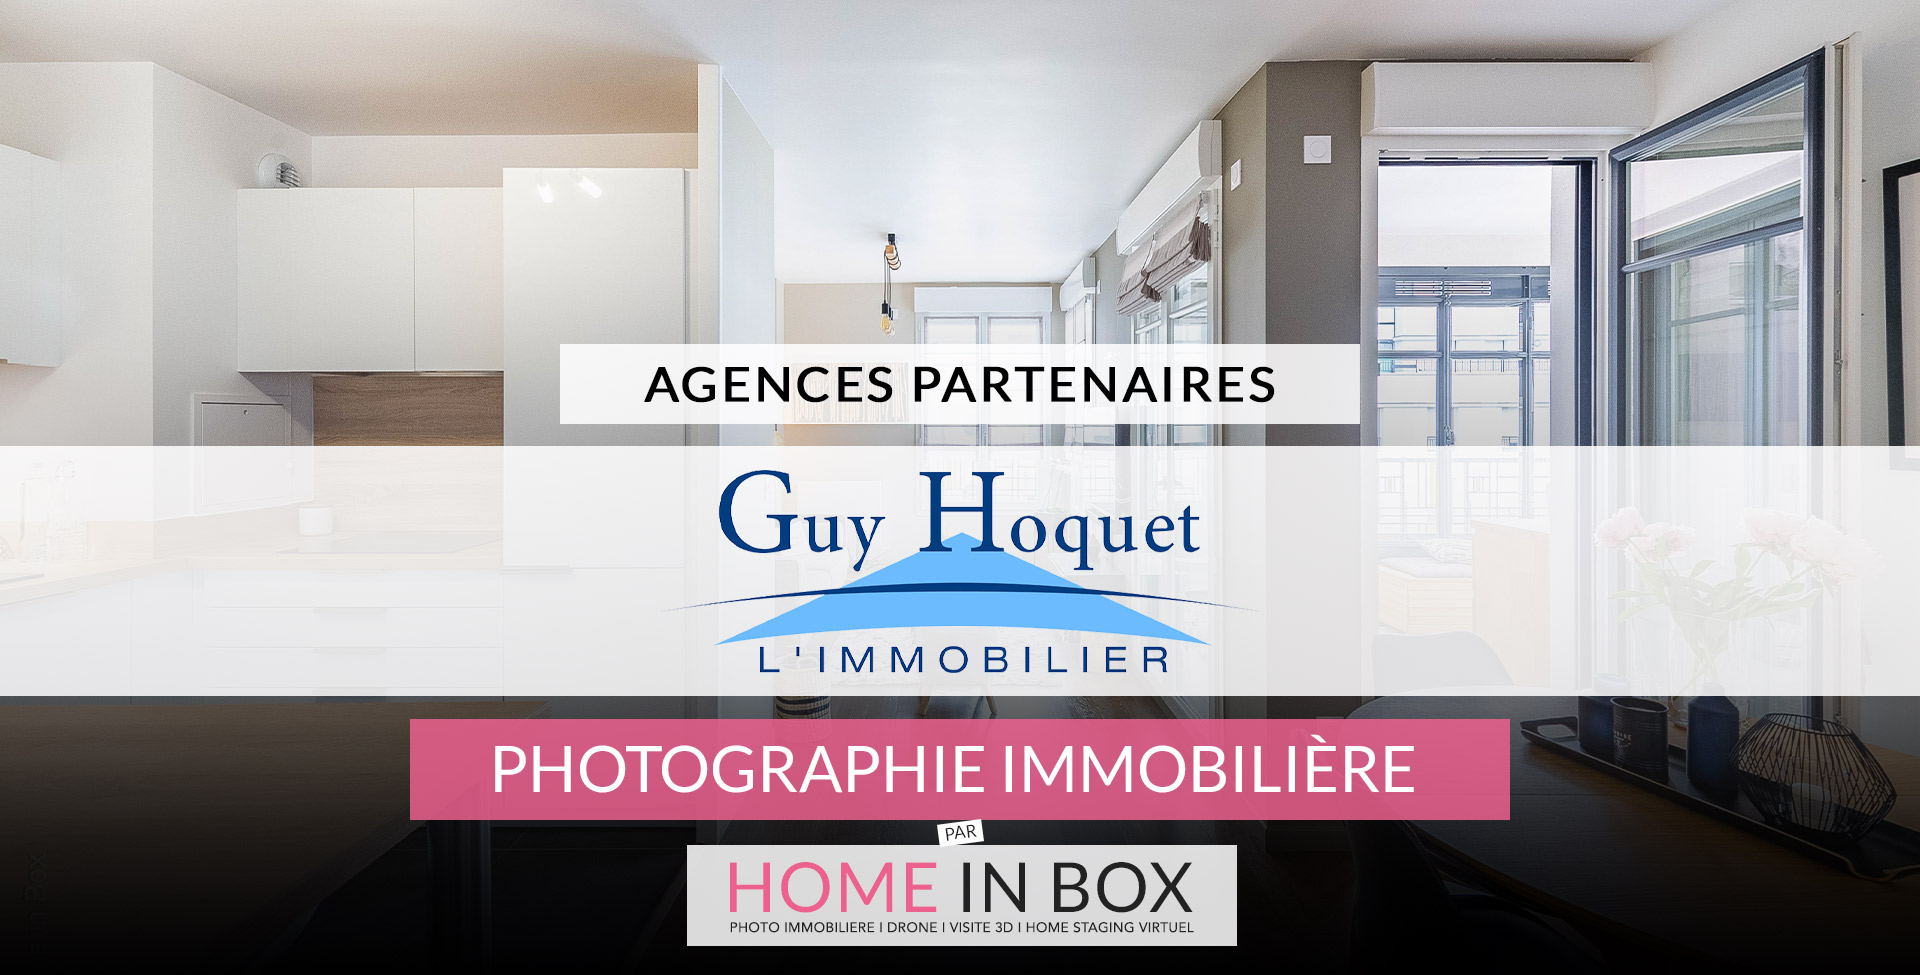 Agences Partenaires Réseau Guy Hoquet | Home in Box